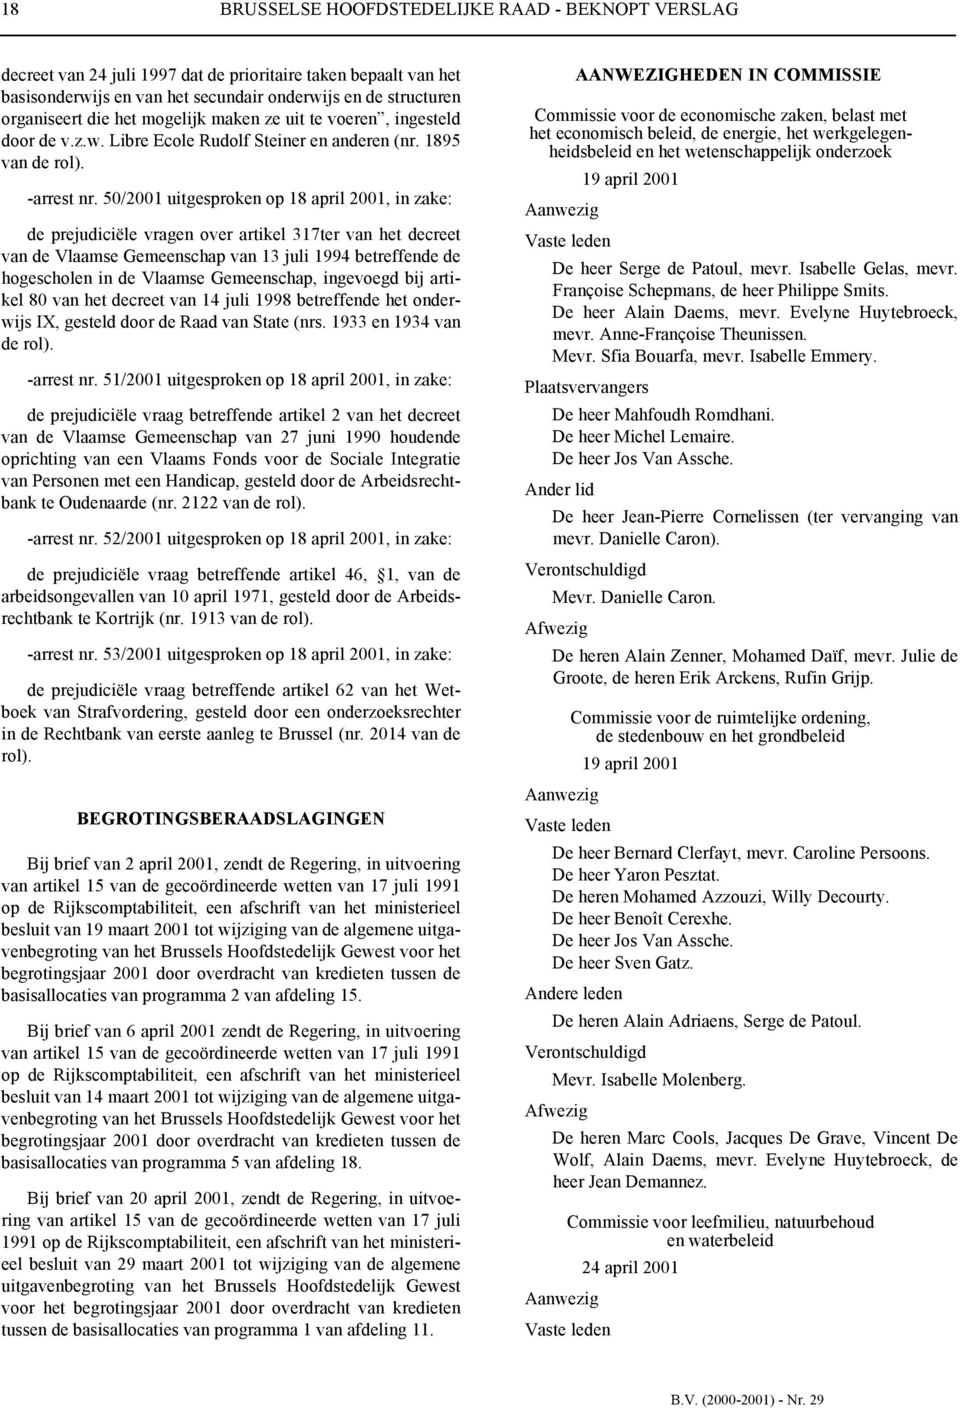 50/2001 uitgesproken op 18 april 2001, in zake: de prejudiciële vragen over artikel 317ter van het decreet van de Vlaamse Gemeenschap van 13 juli 1994 betreffende de hogescholen in de Vlaamse